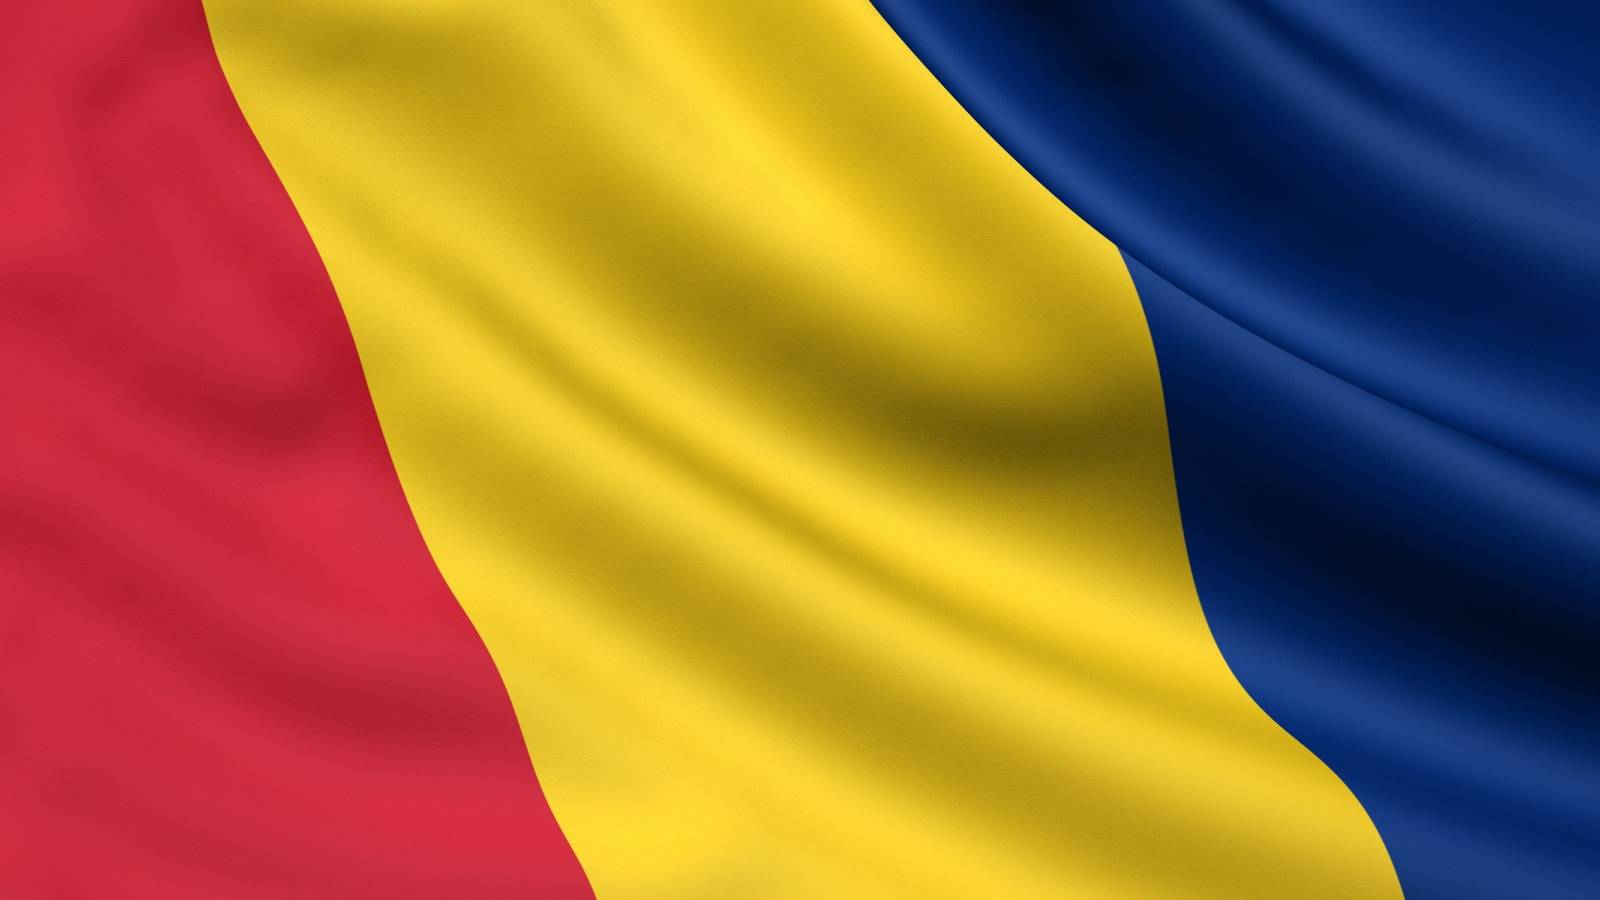 Zaktualizowano listę krajów o wysokim ryzyku epidemiologicznym rządu rumuńskiego